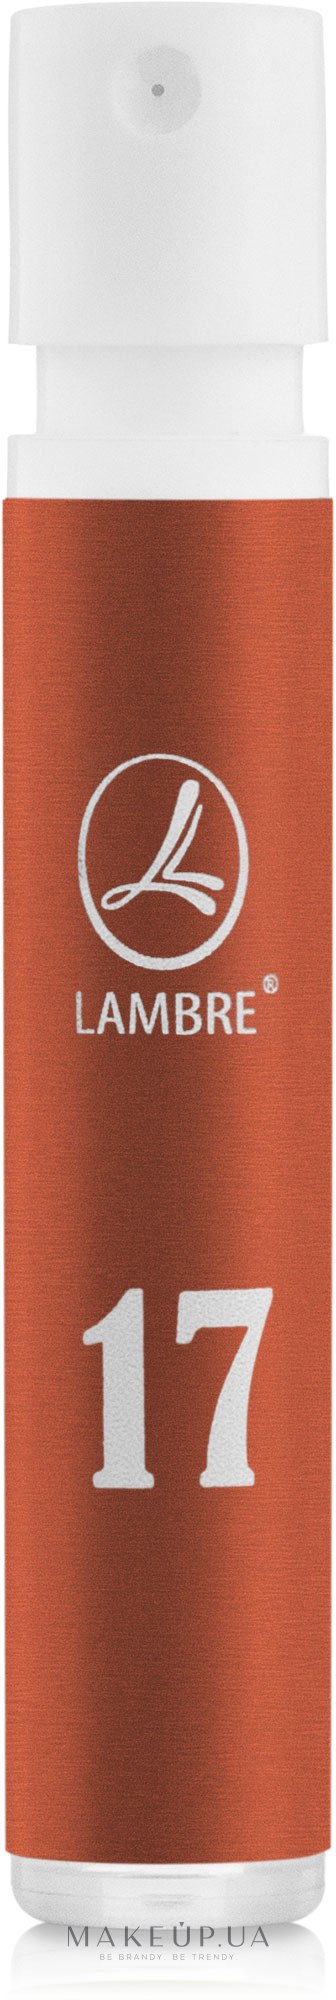 Lambre 17 - Туалетная вода (пробник) — фото 1.2ml